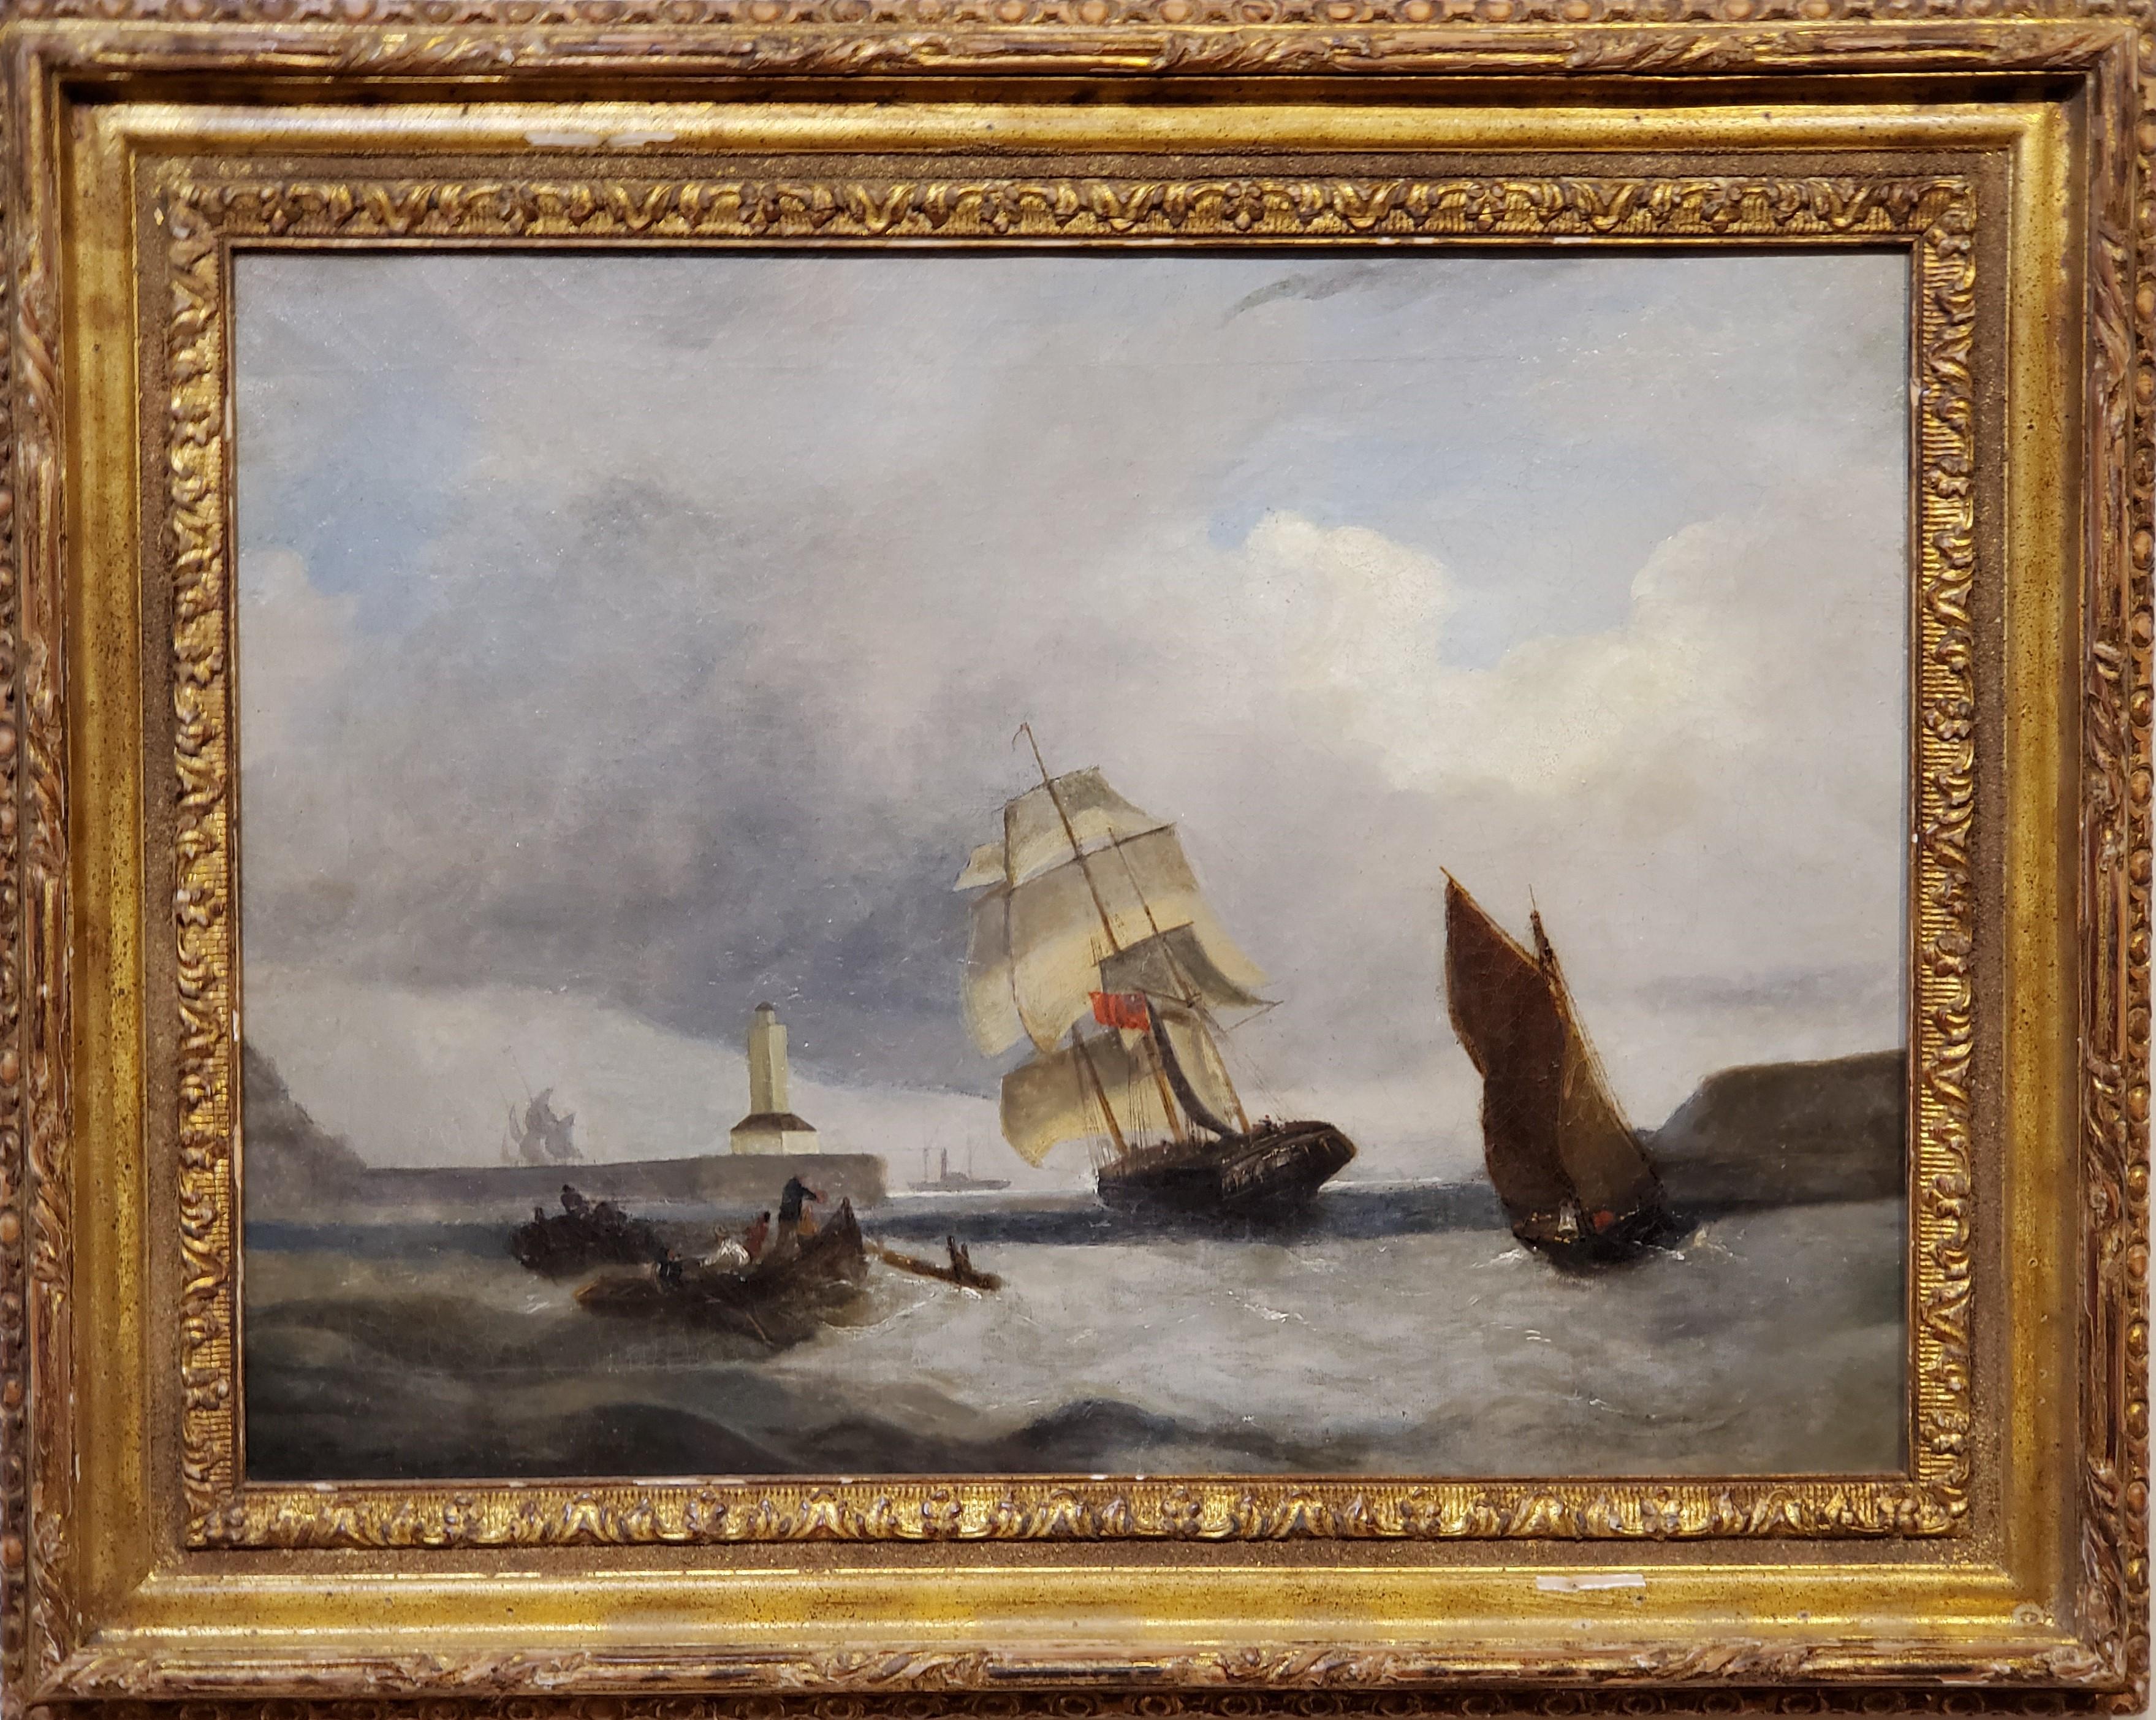 19th century ship paintings